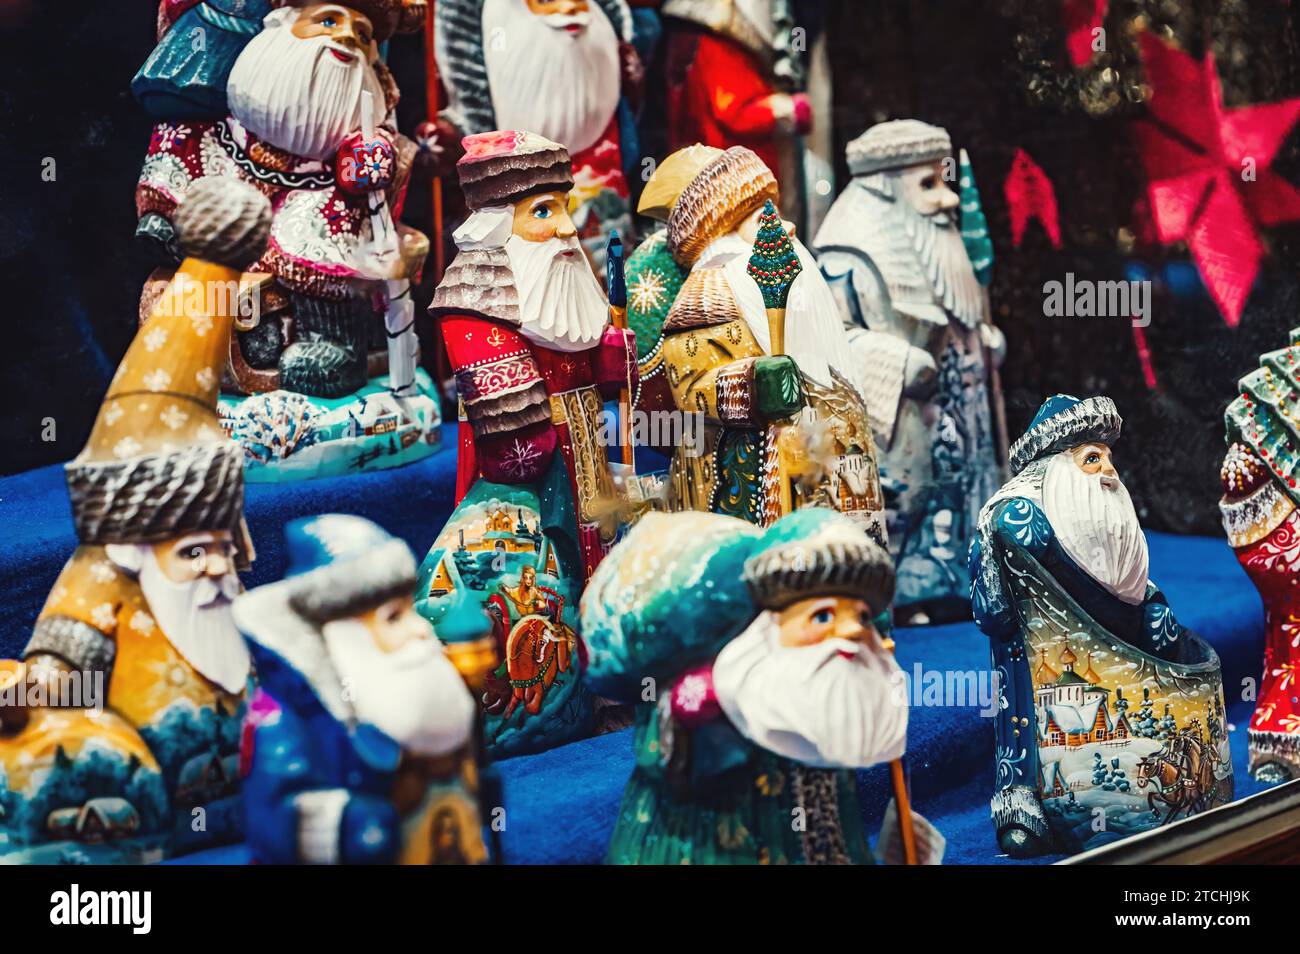 Die Figuren von Vater Frost (russisch Ded Moroz) werden vor der weihnachtszeit im Schaufenster ausgestellt. Winter, Dezember. Russische Weihnachtsfigur Stockfoto